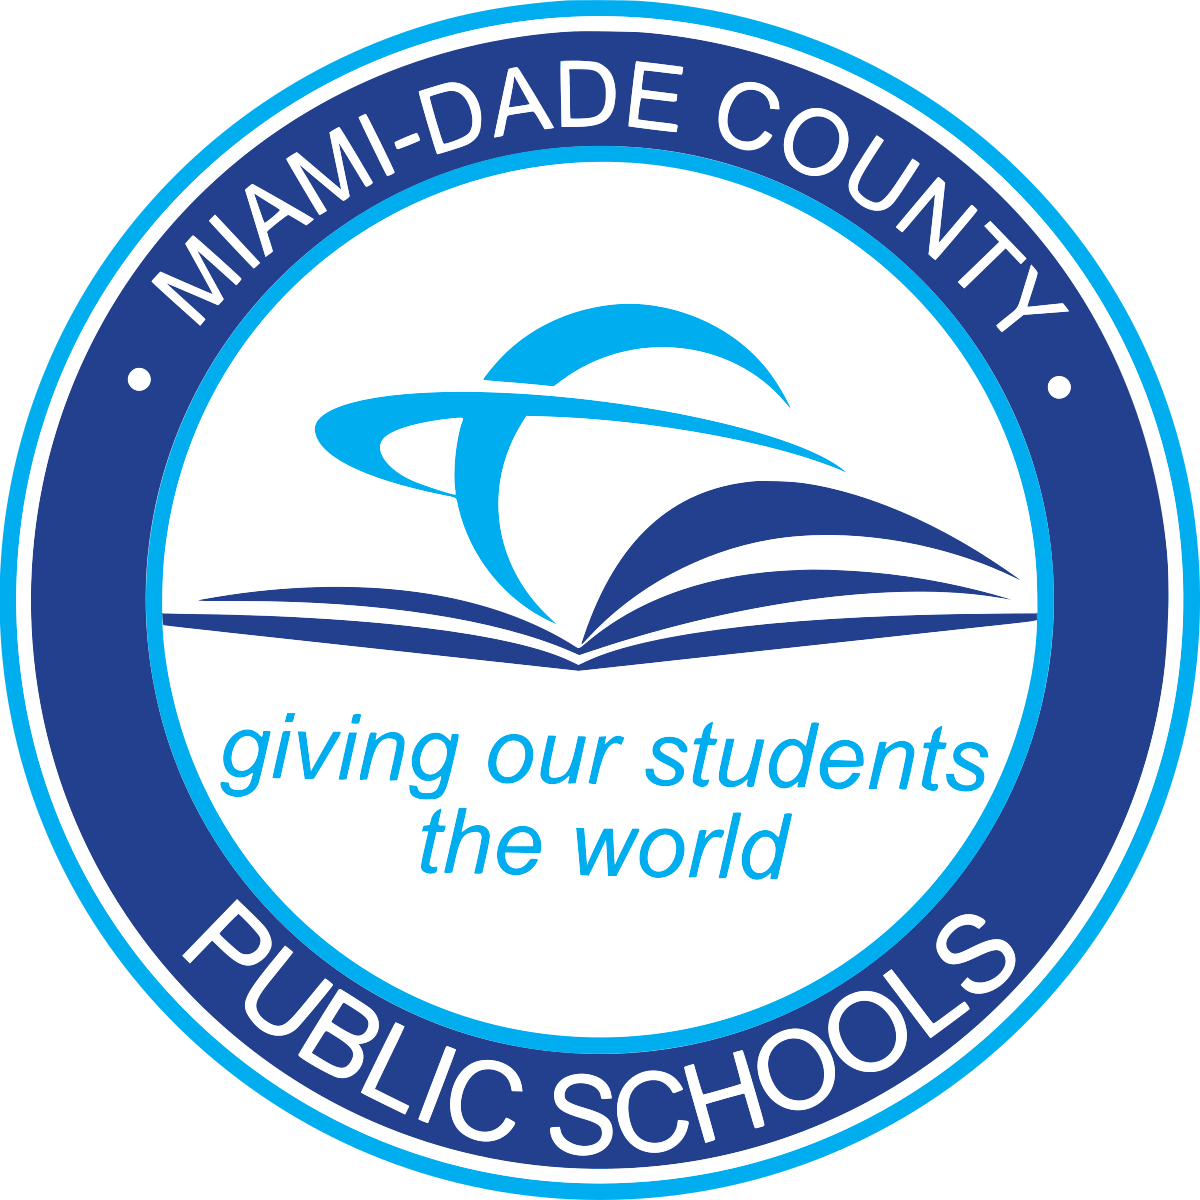 Miami-Dade County Public Schools logo